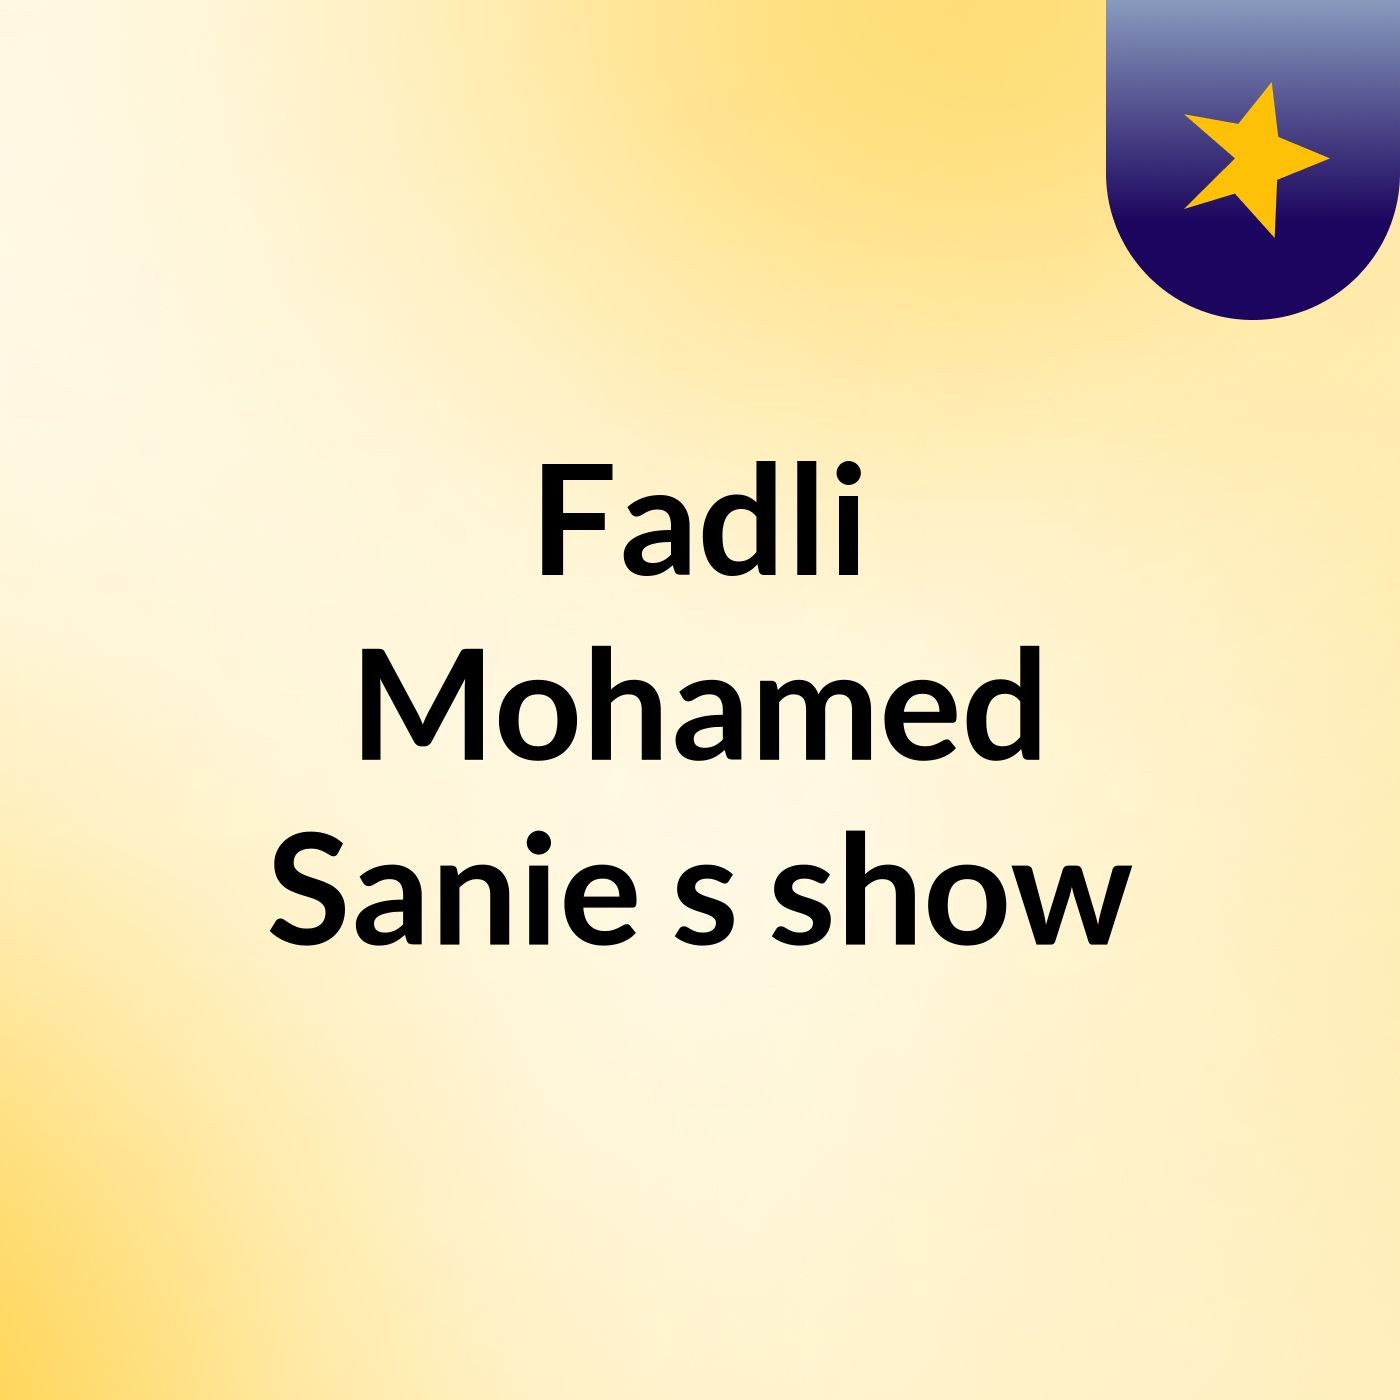 Episode 16 - Fadli Mohamed Sanie's show